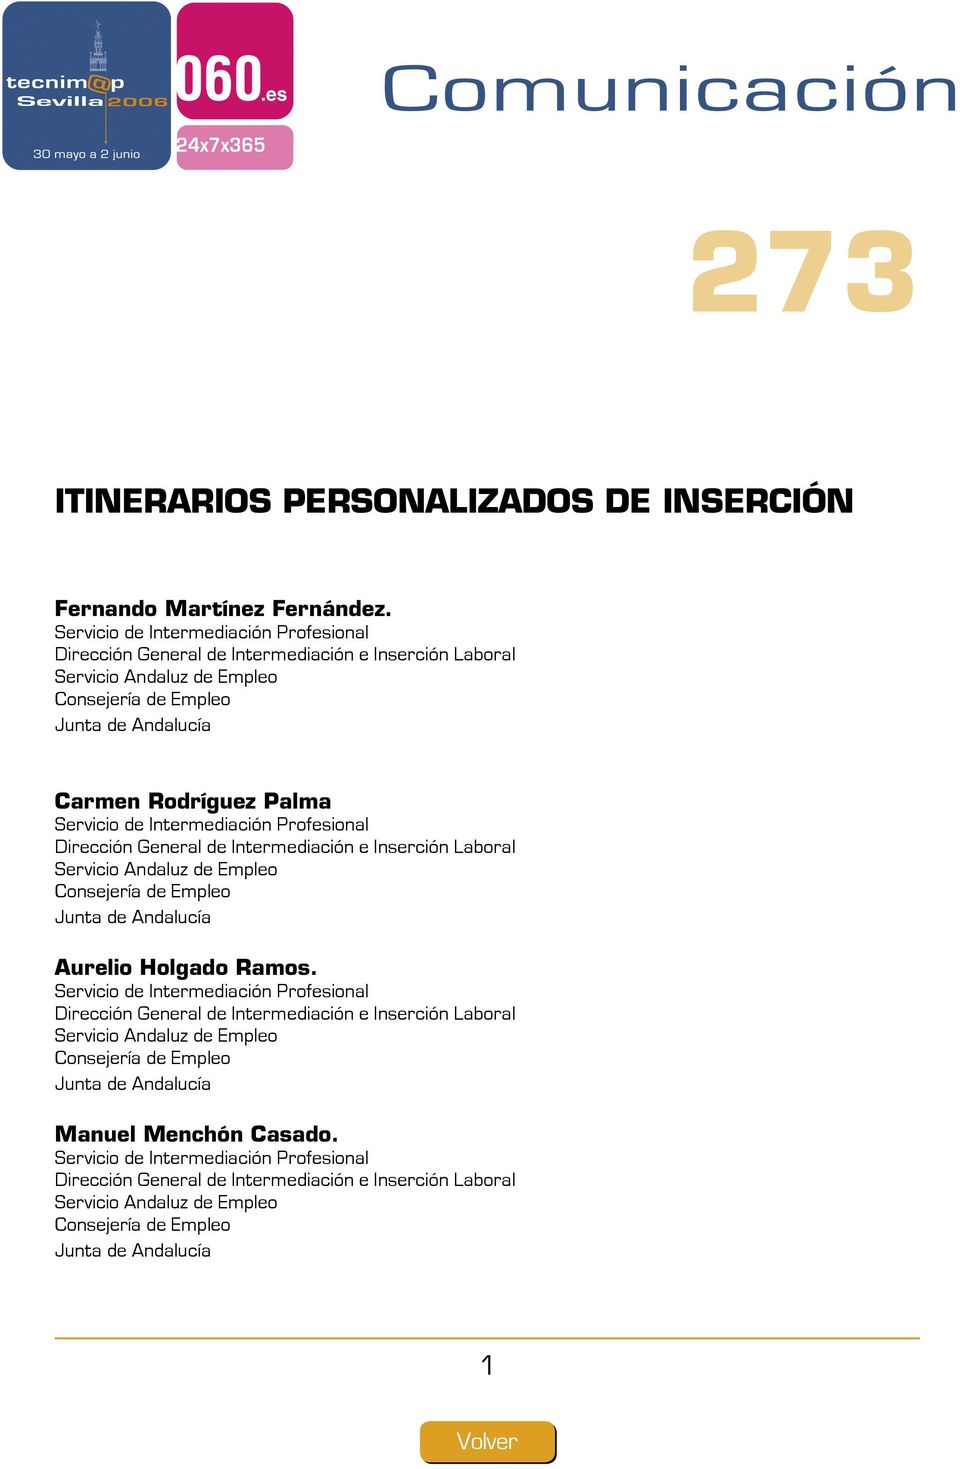 de Intermediación Profesional Dirección General de Intermediación e Inserción Laboral Servicio Andaluz de Empleo Consejería de Empleo Junta de Andalucía.